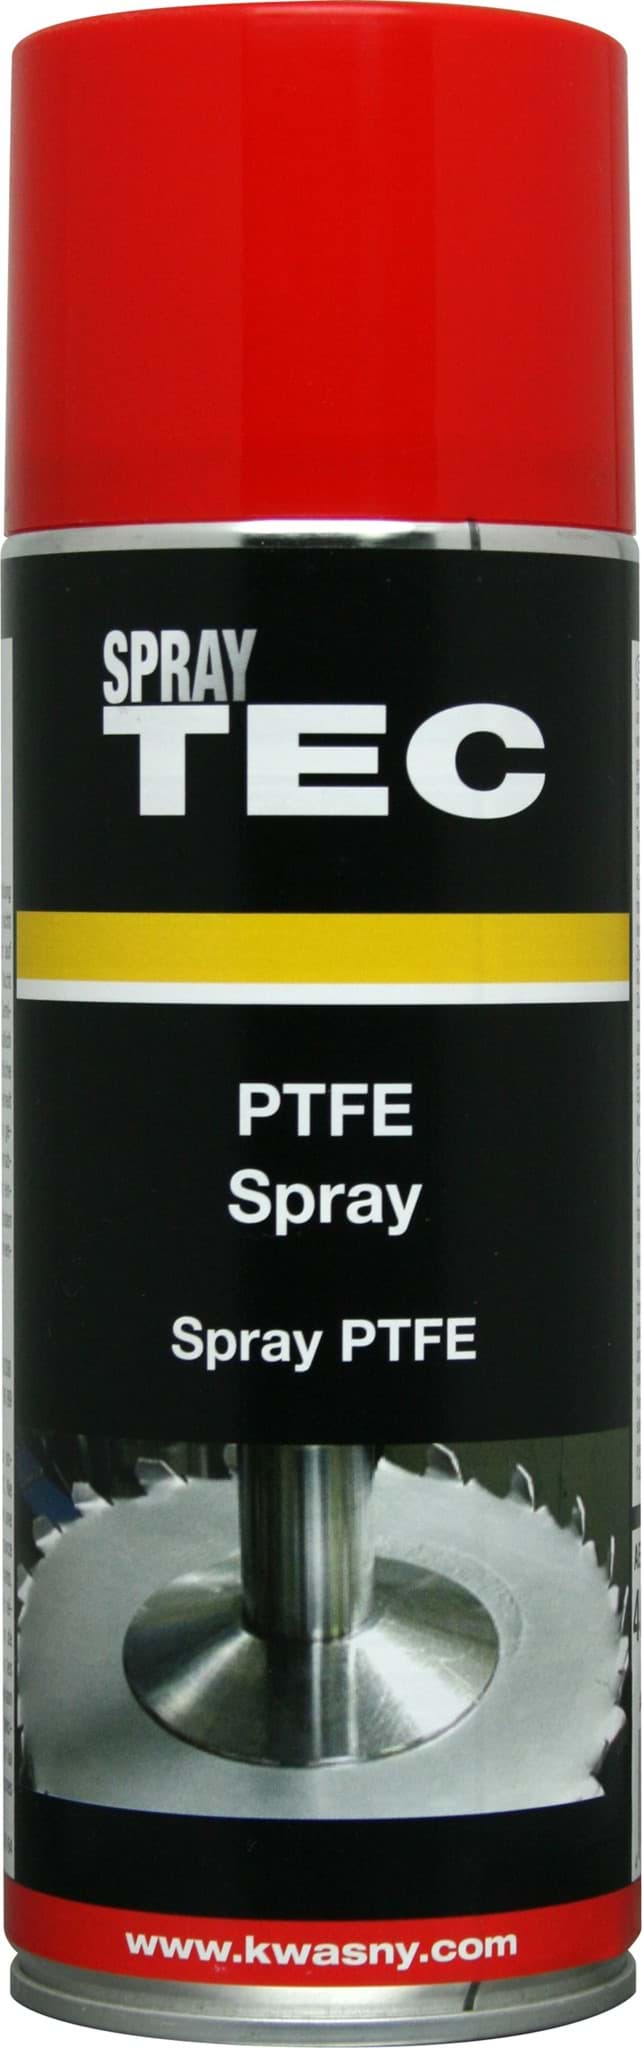 SprayTec PTFE-Spray 400ml 235030 resmi